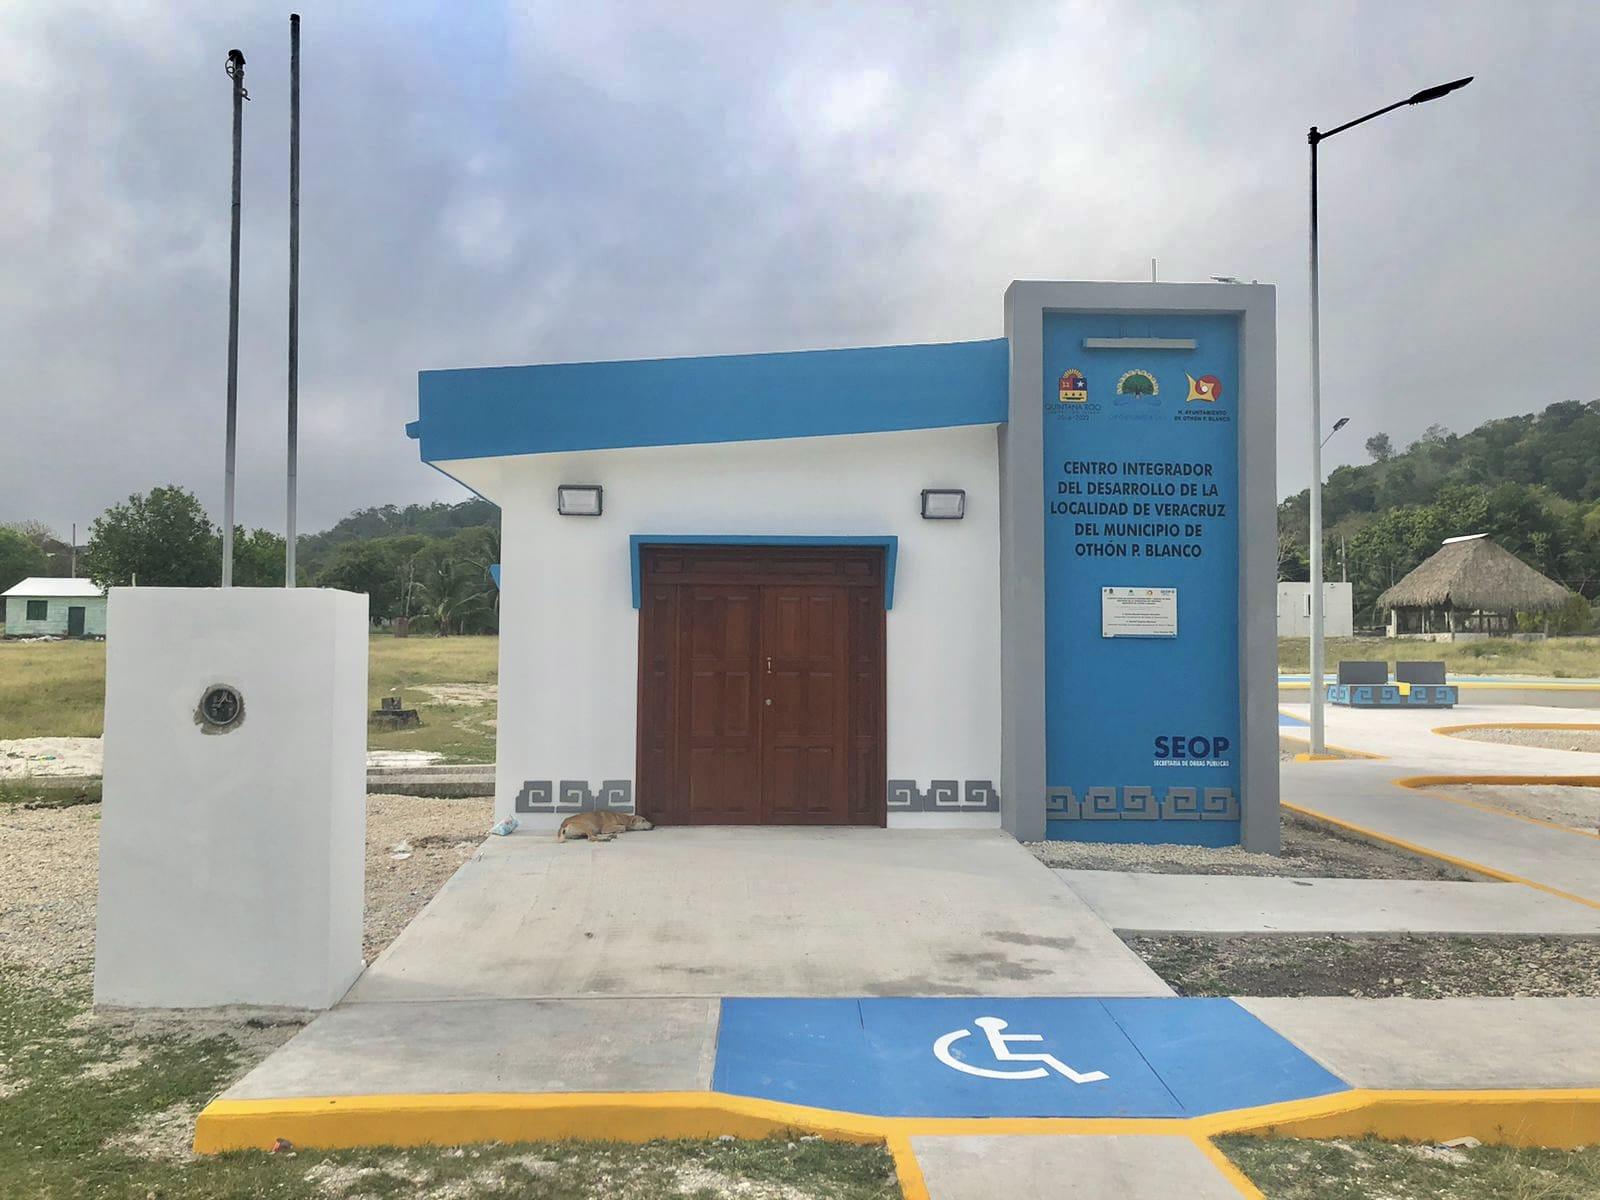 Habitantes de la comunidad de Veracruz ya cuentan con espacios dignos